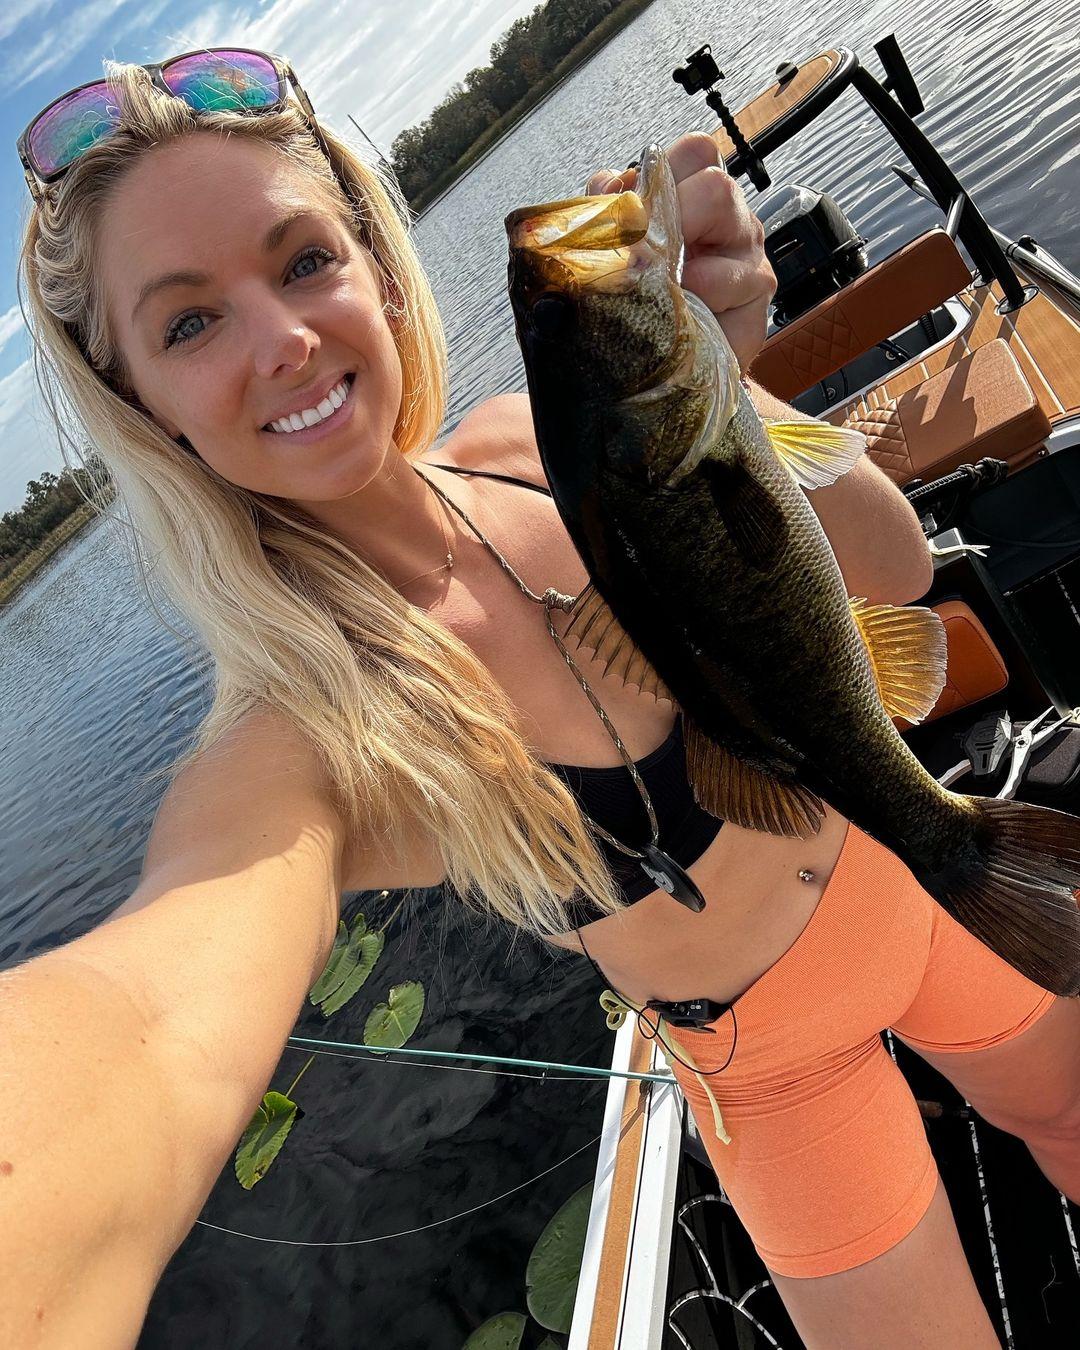 A pescadora da Flórida Erica Lynn tira uma selfie de biquíni enquanto exibe sua grande pescaria do dia.